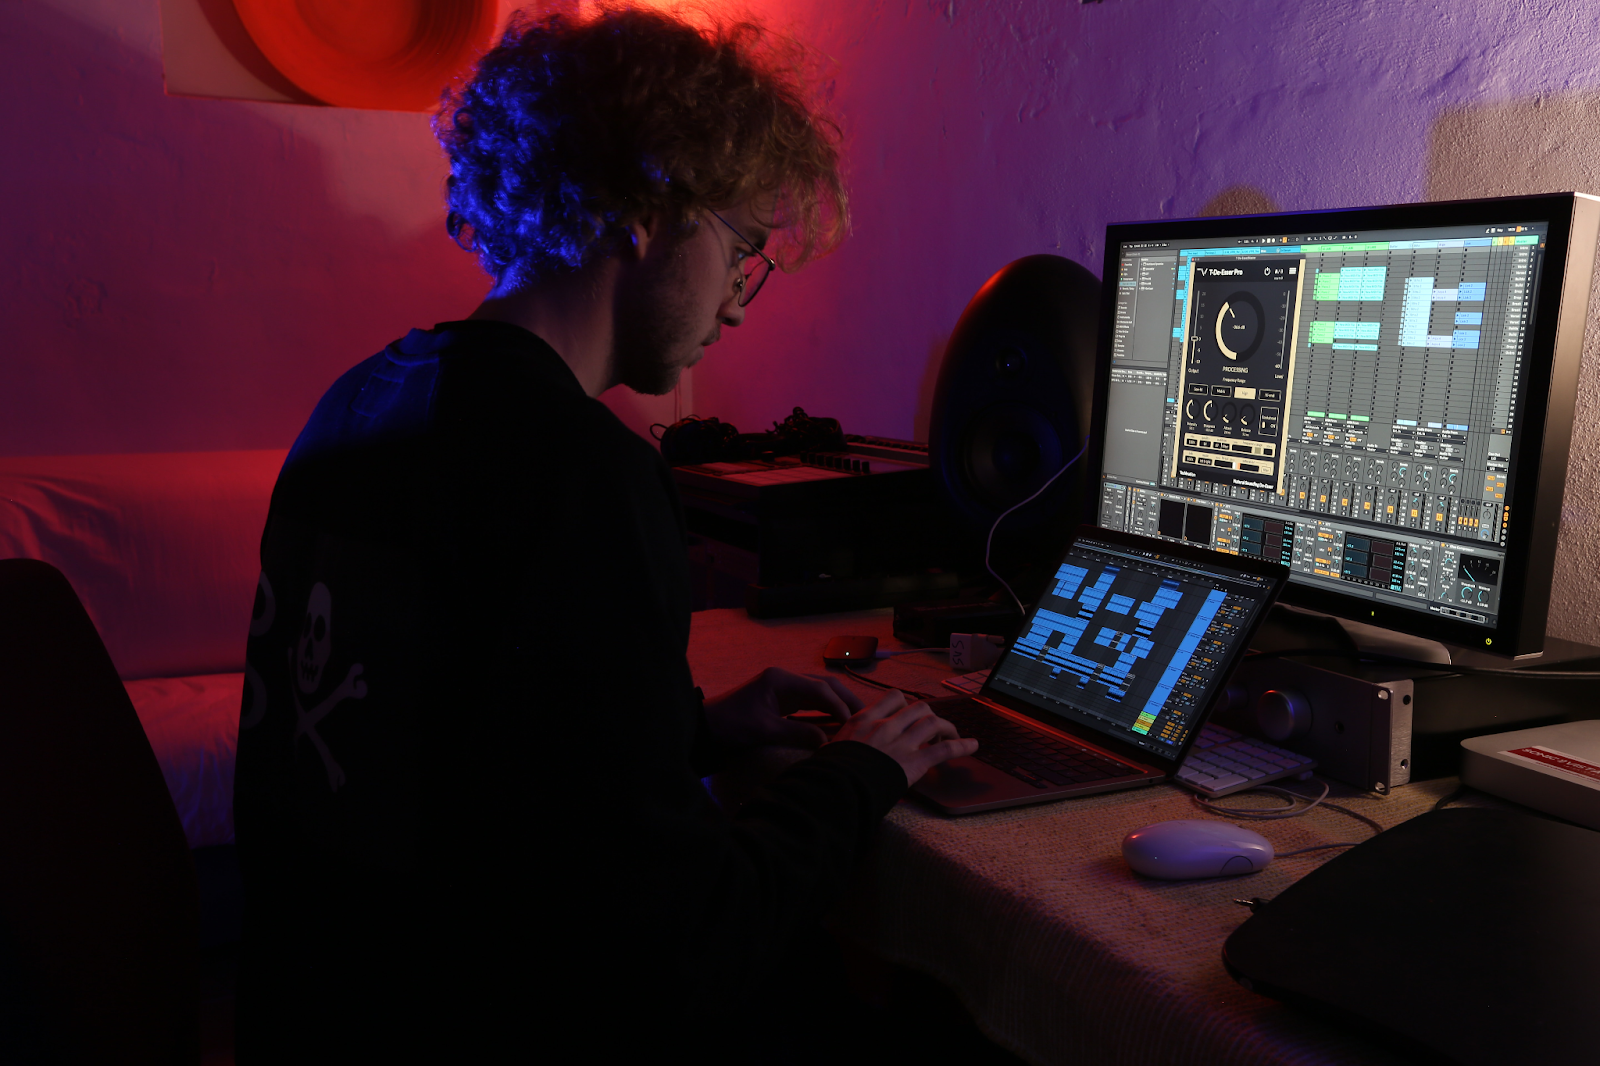 A man using laptop ang monitor